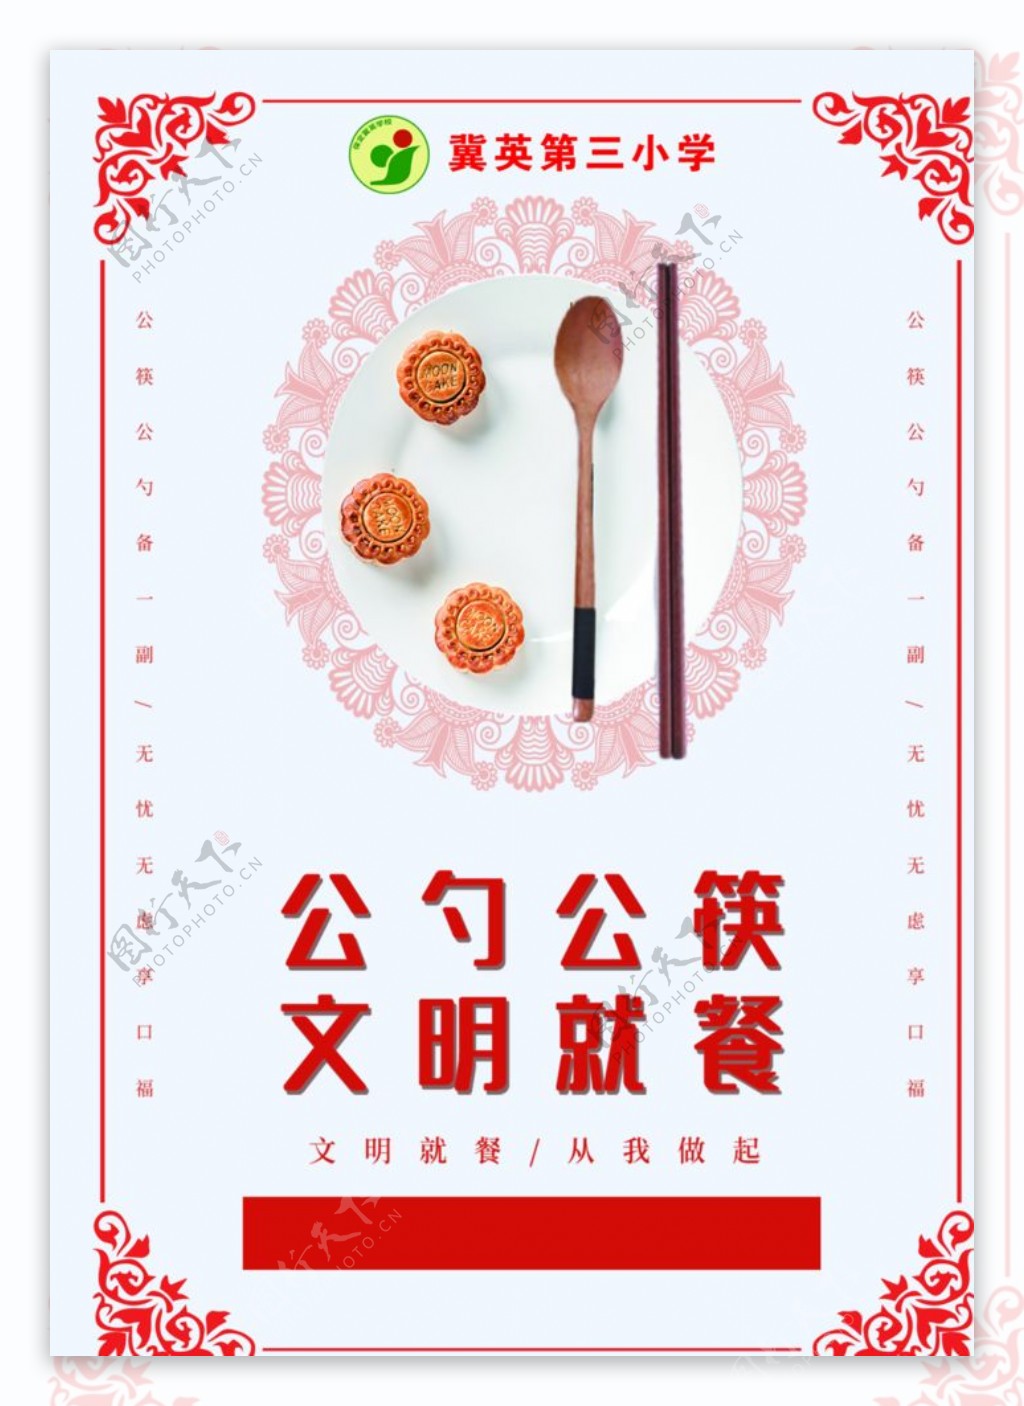 公勺公筷文明就餐图片